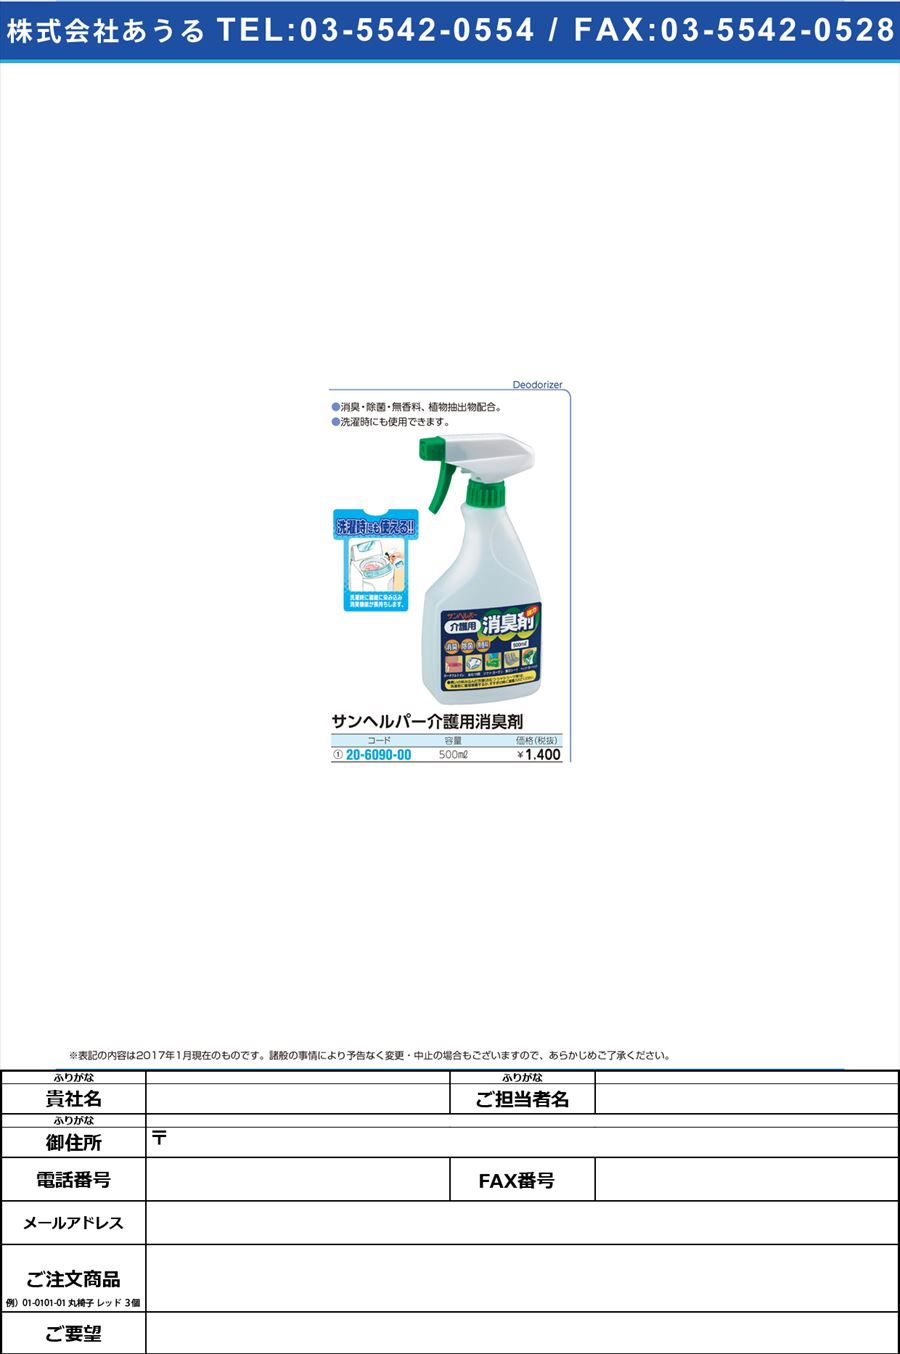 サンヘルパー介護用消臭剤 ｶｲｺﾞﾖｳｼｮｳｼｭｳｻﾞｲ 500ML(20-6090-00)【1本単位】【2017年カタログ商品】